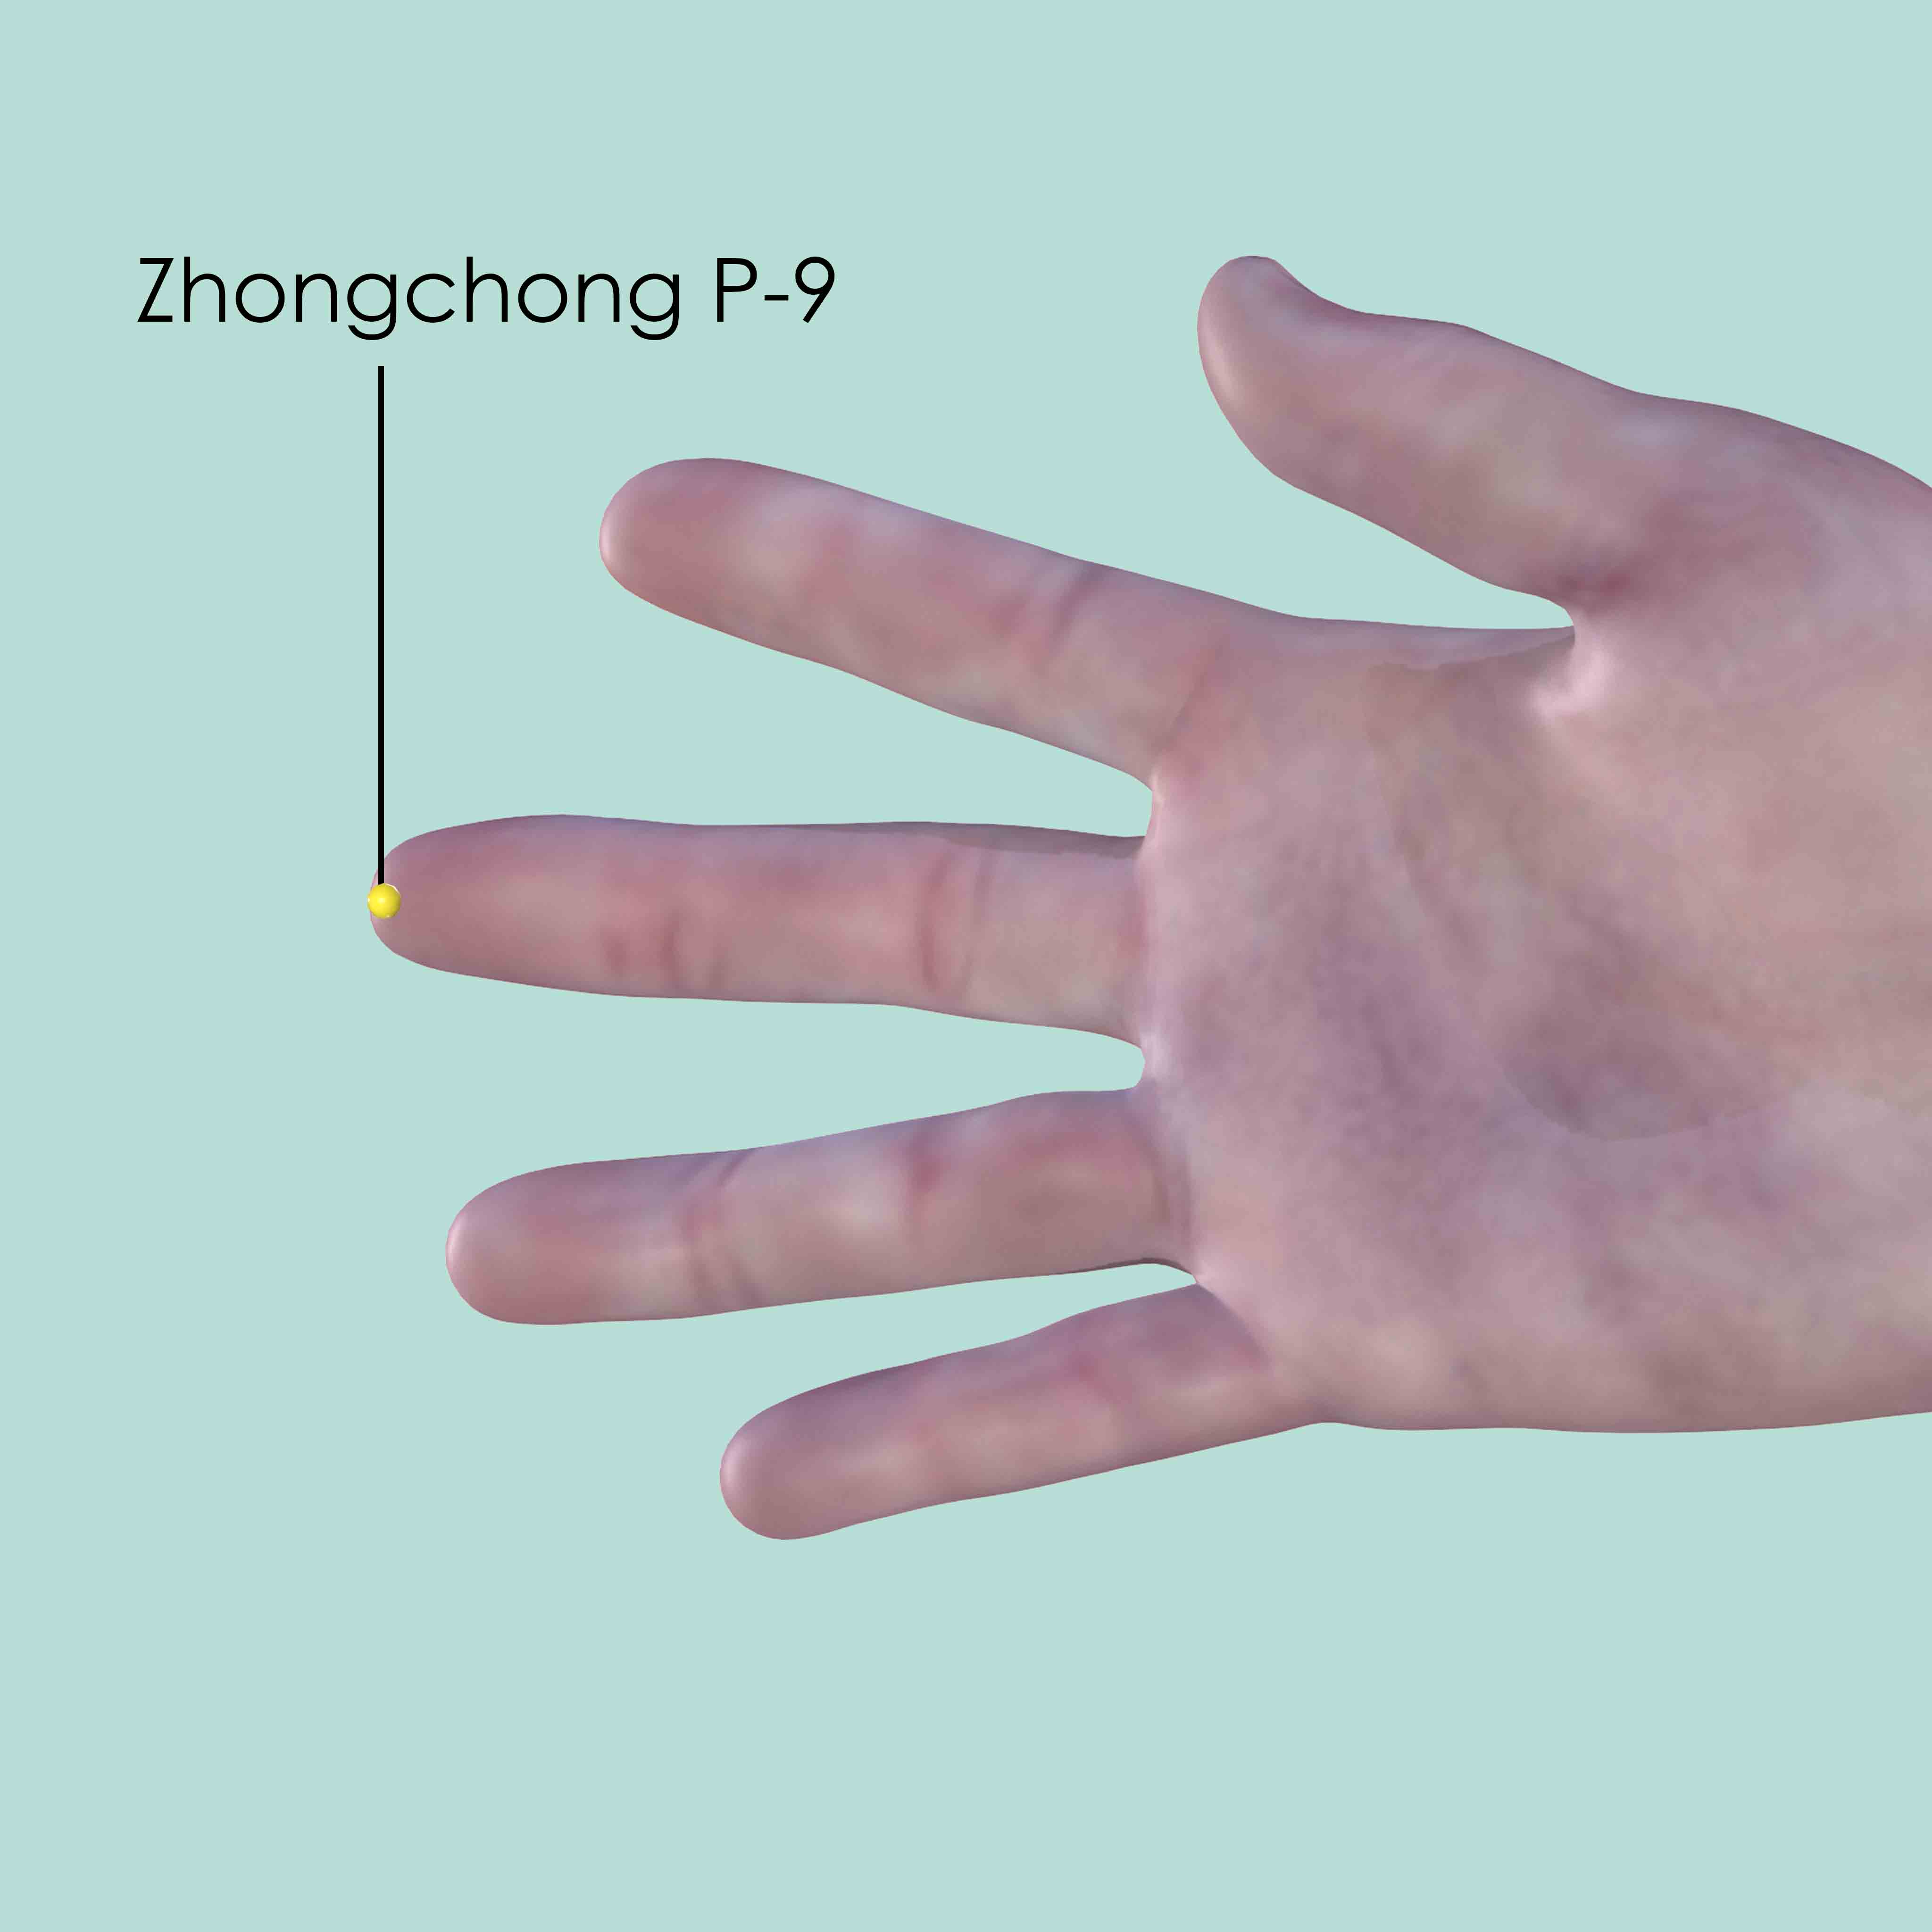 Zhongchong P-9